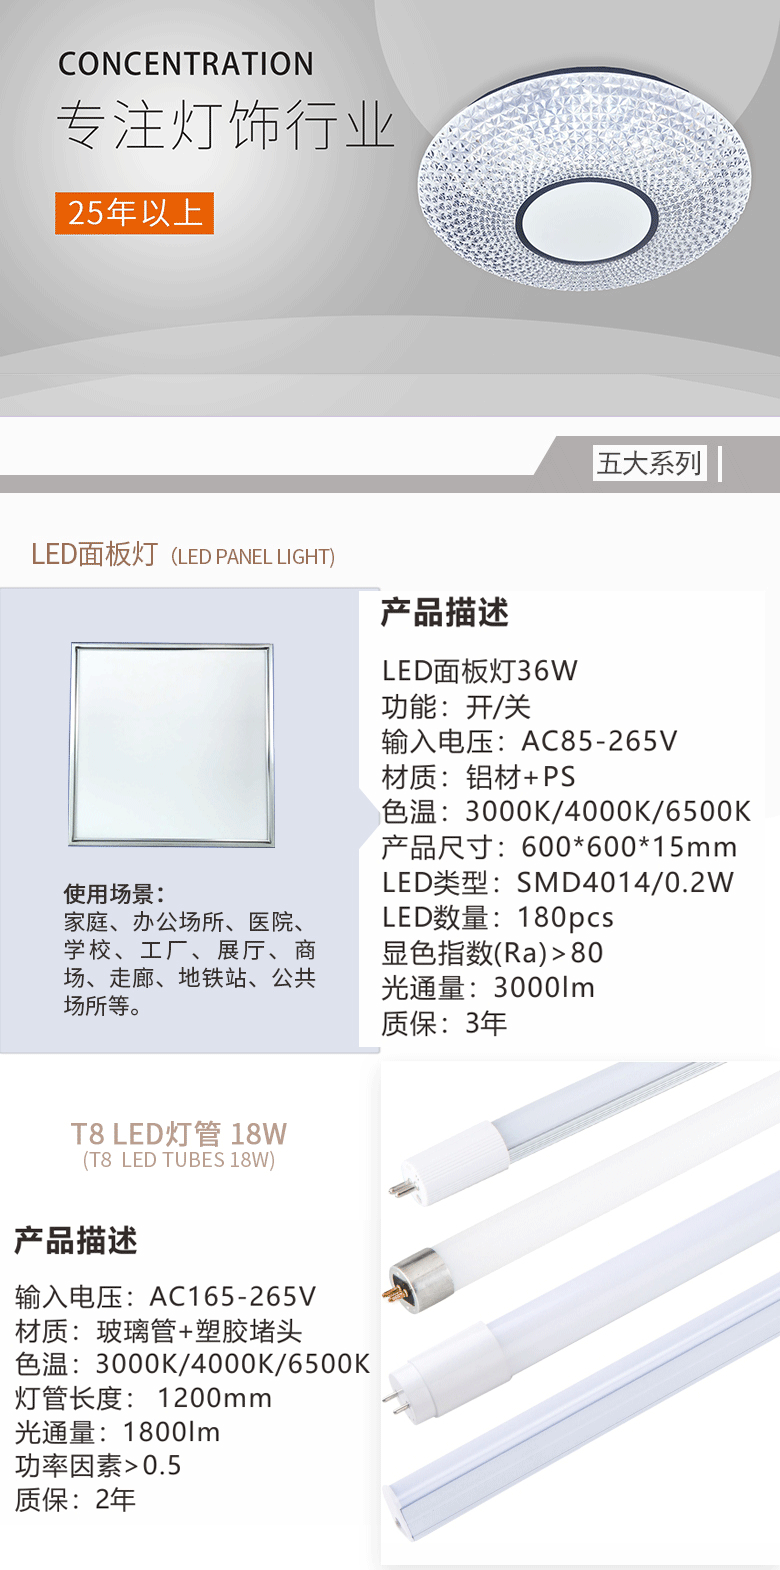 圆形LED吸顶灯产品简介